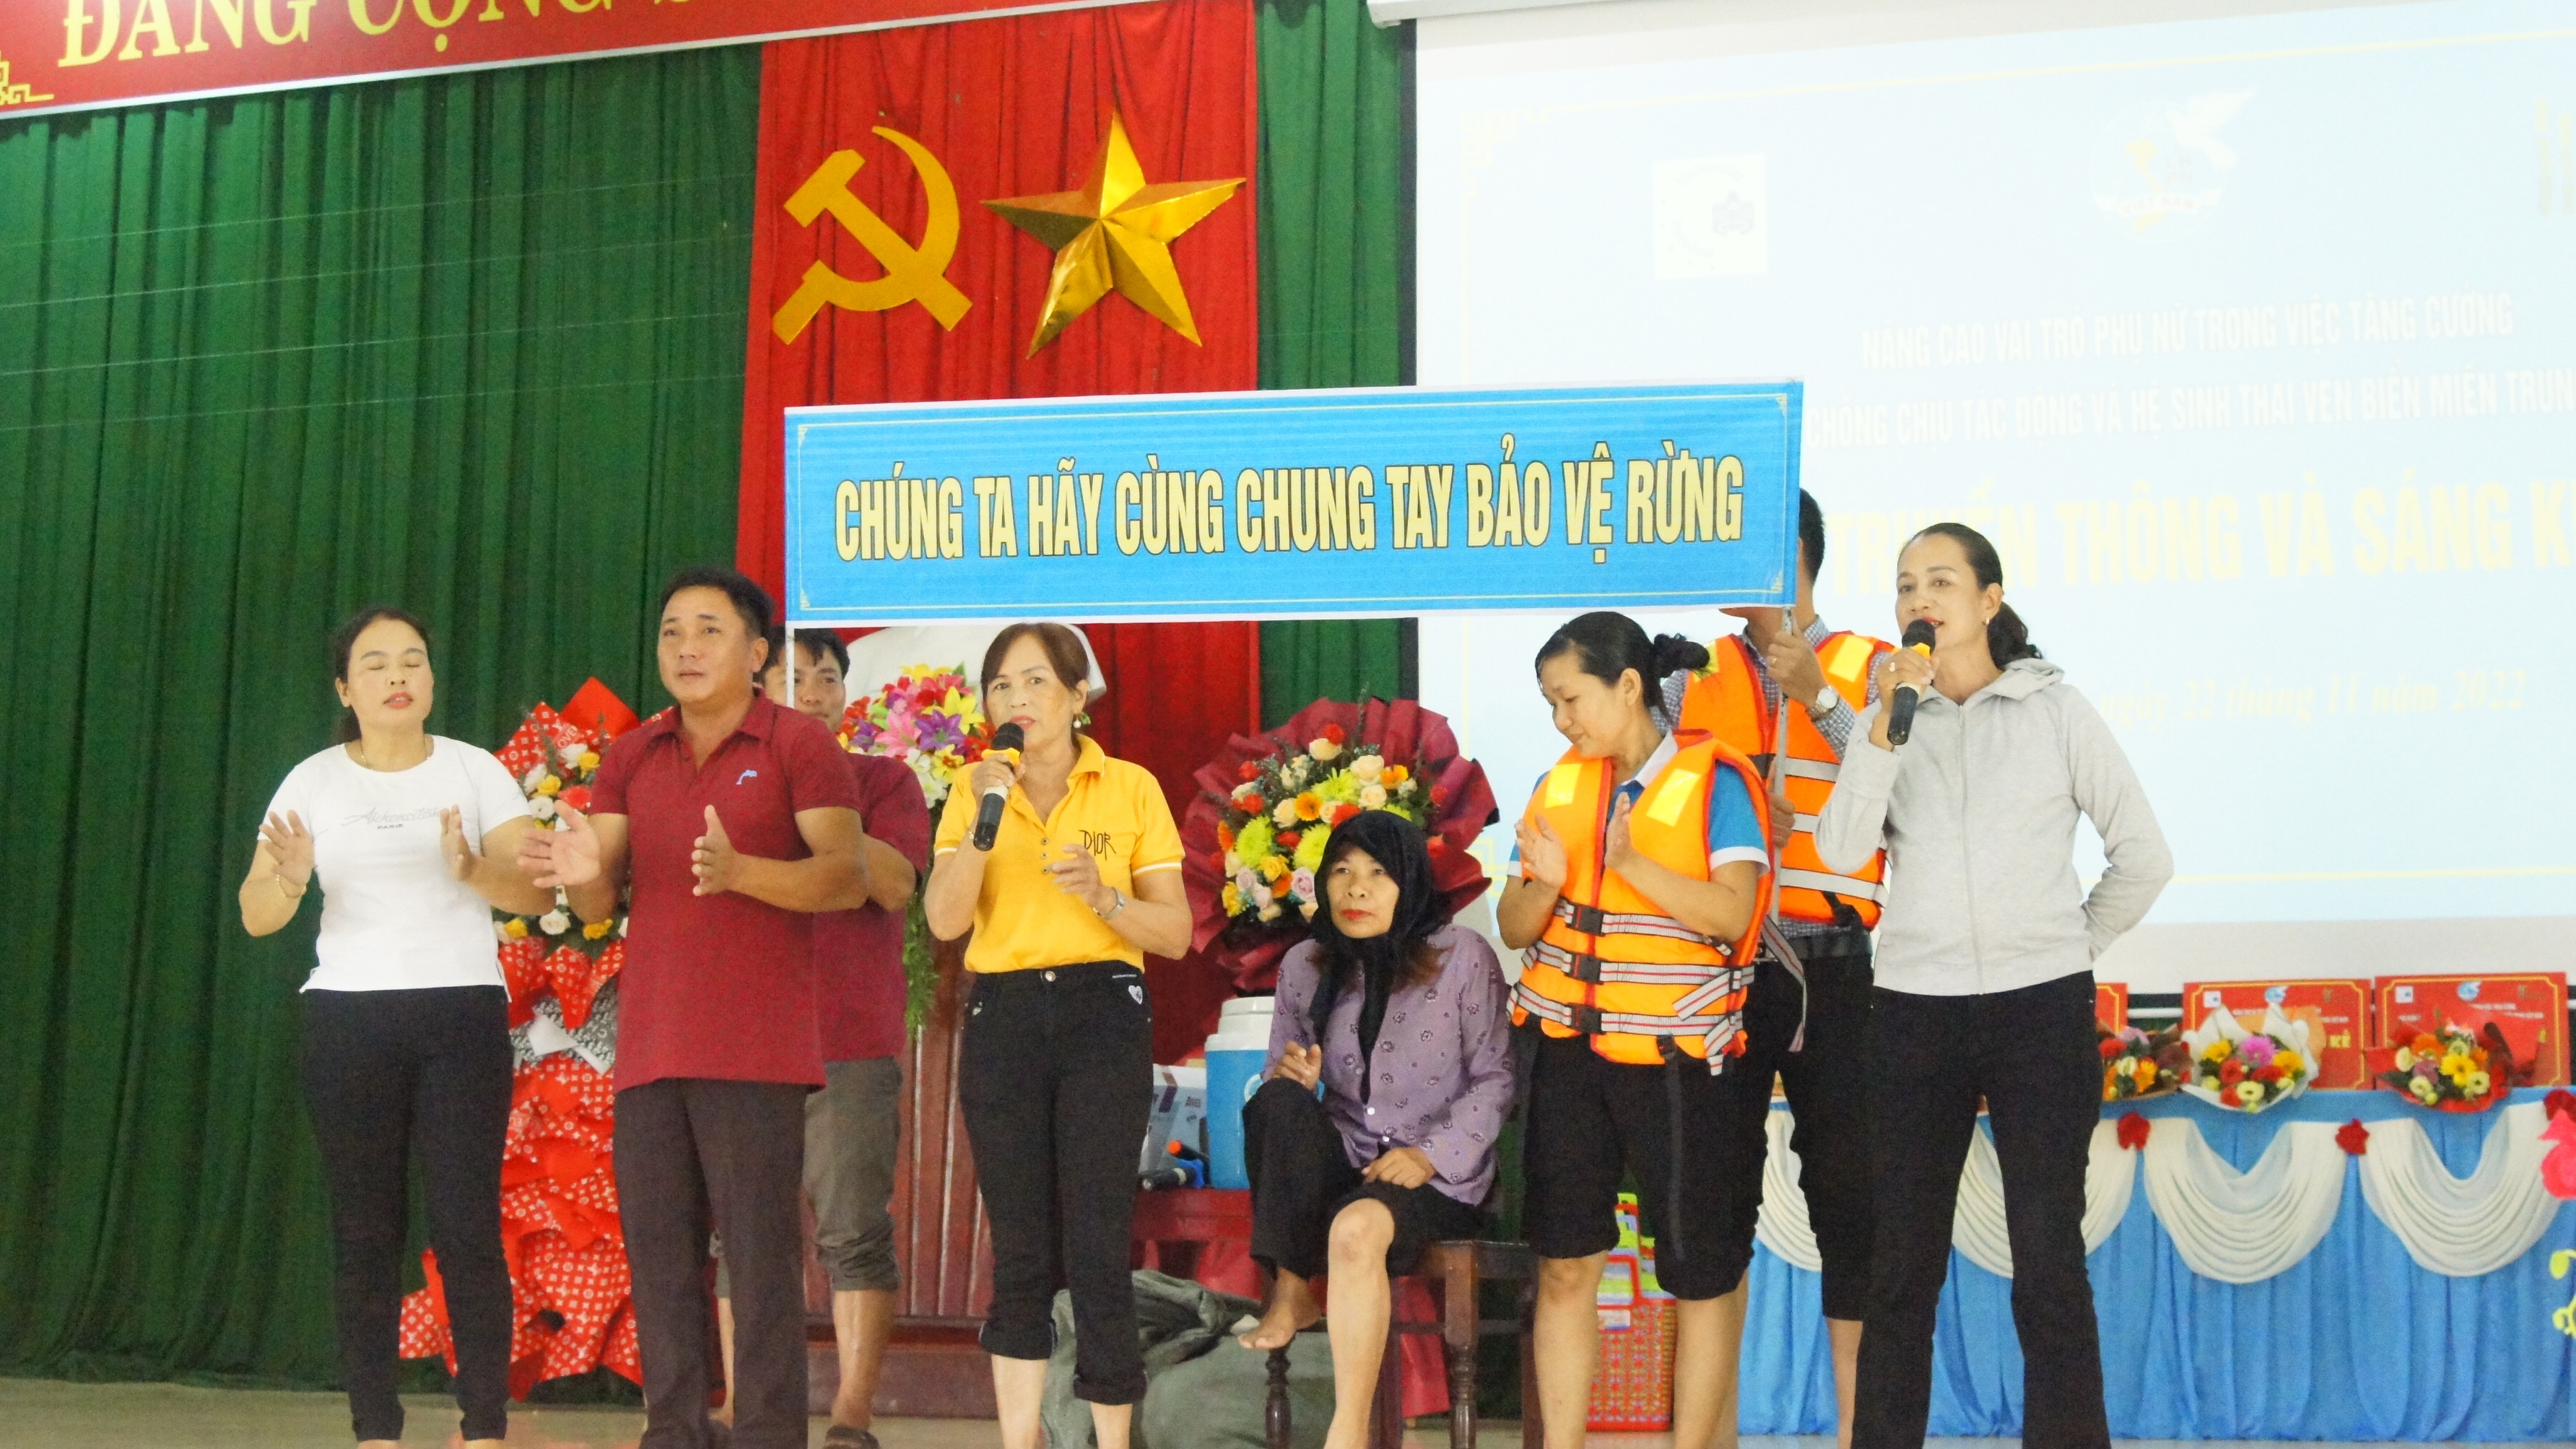 Performance Quang Thai